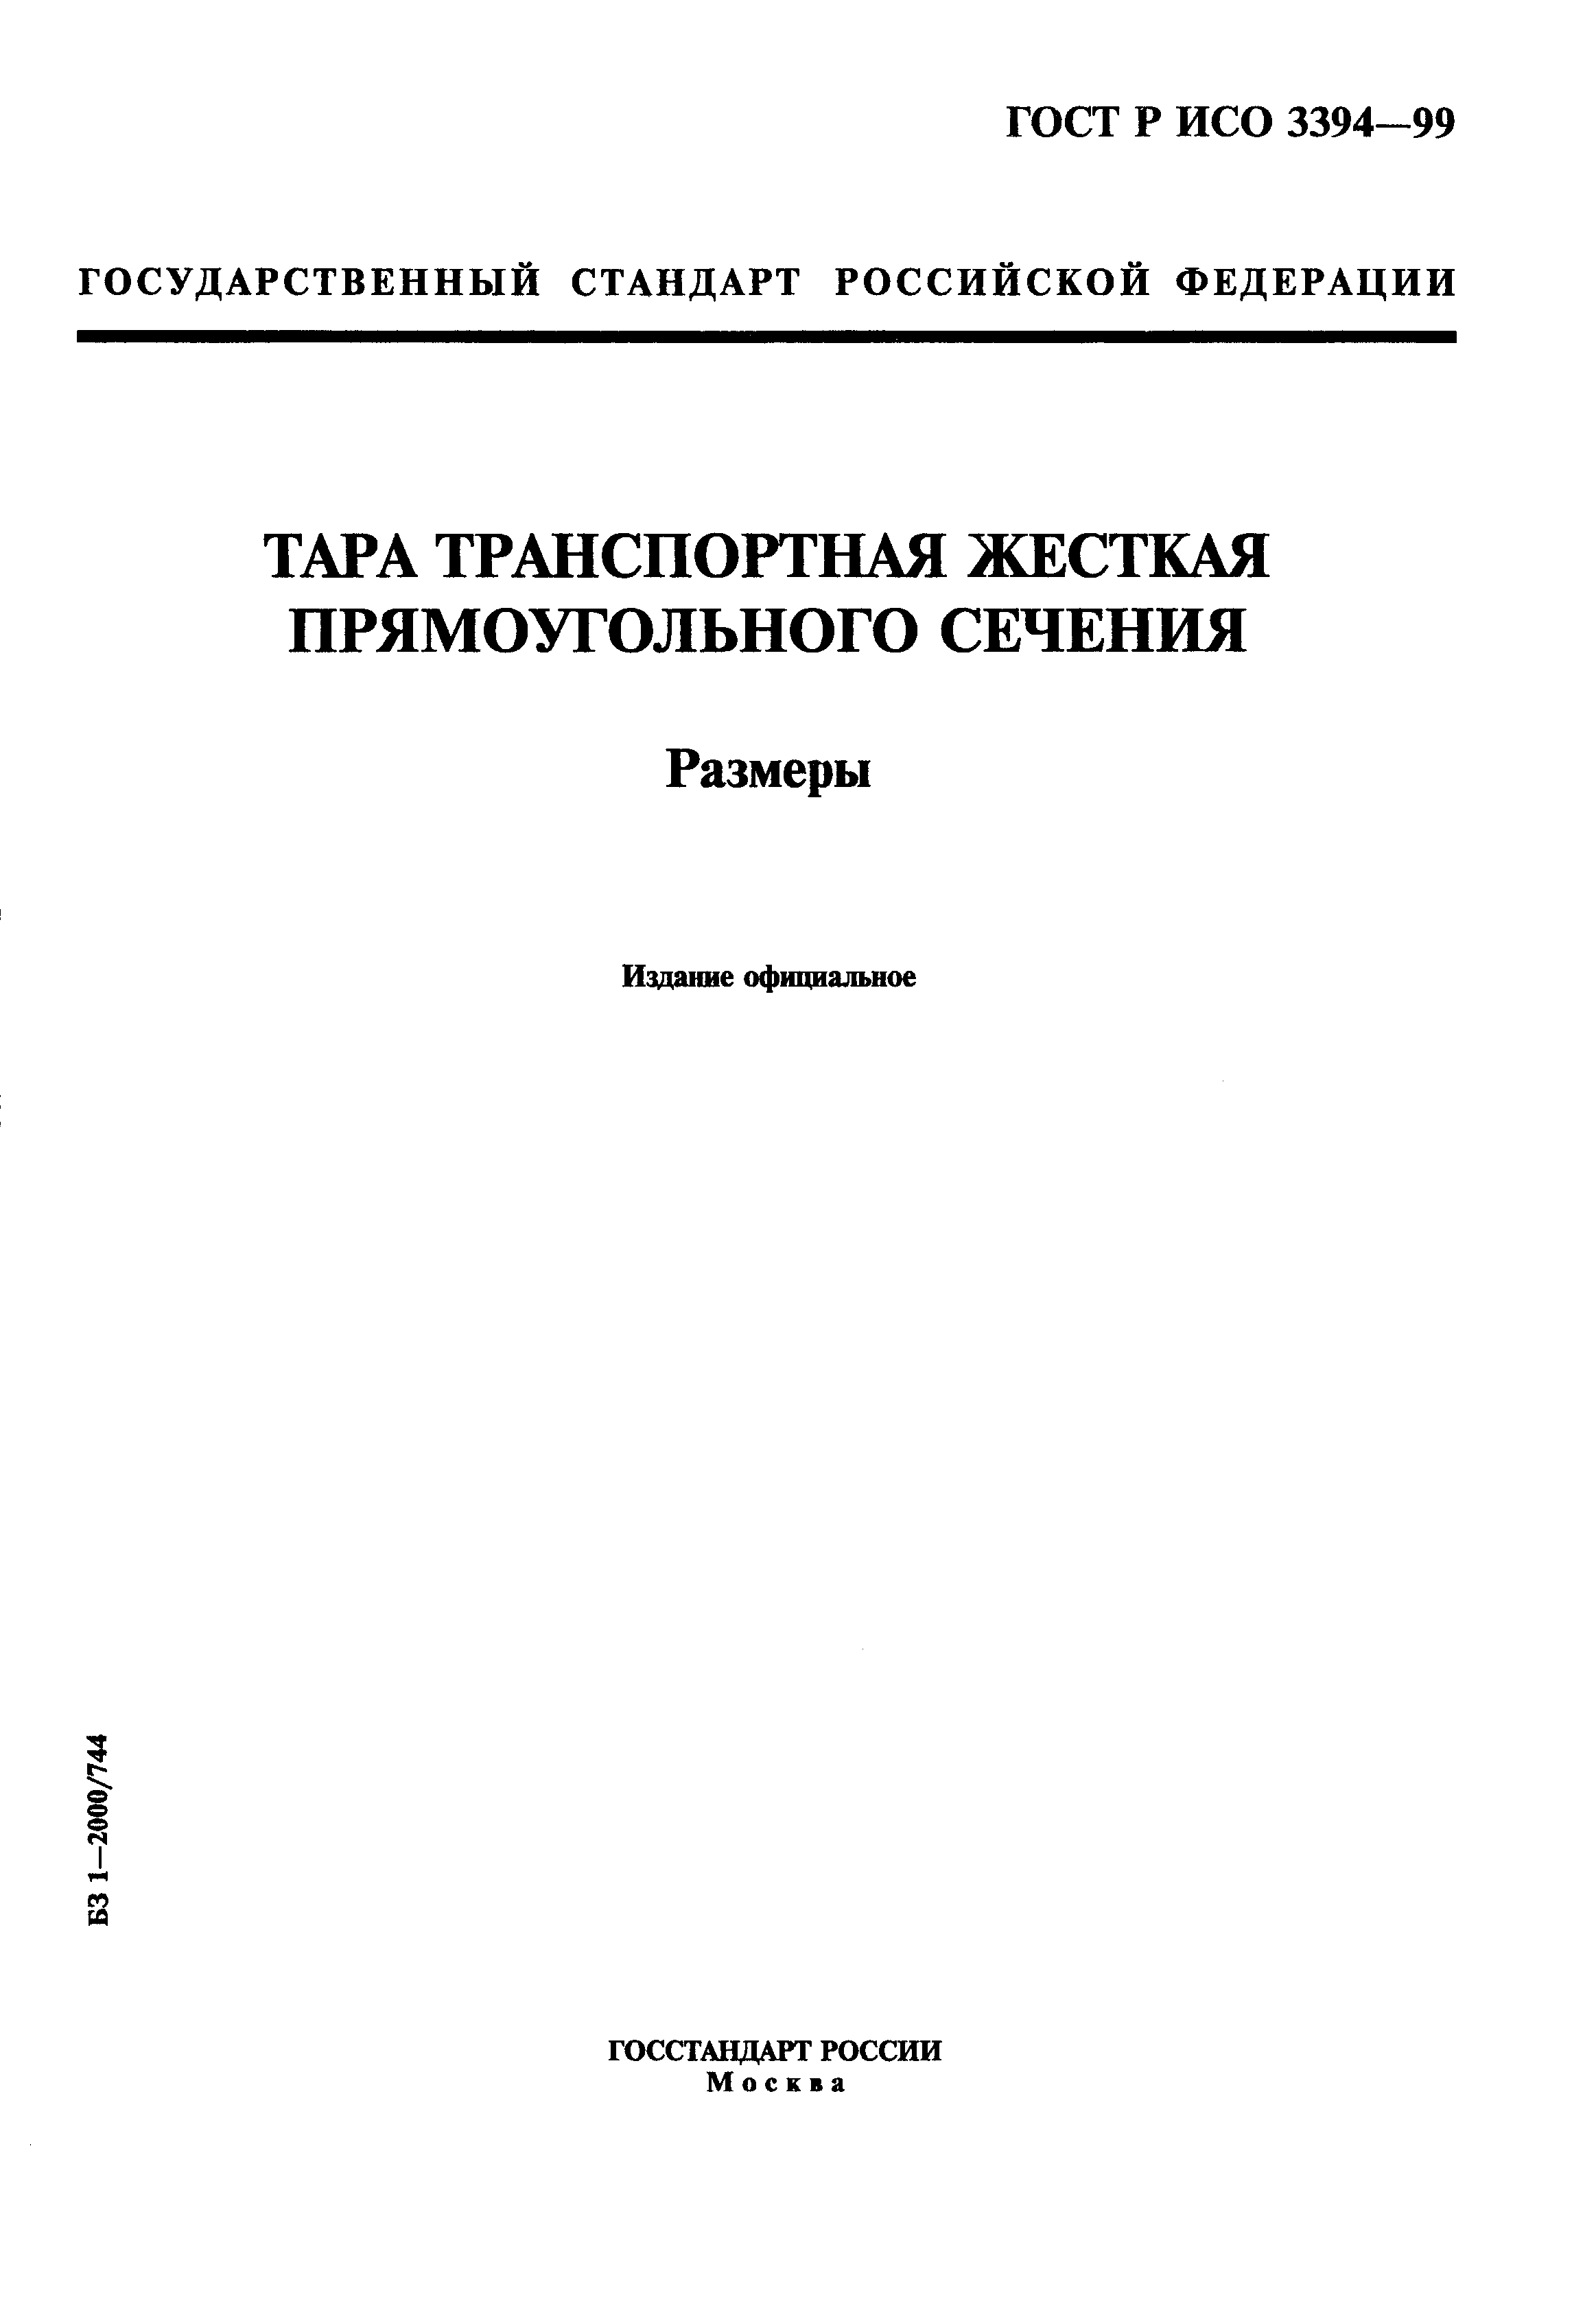 ГОСТ Р ИСО 3394-99